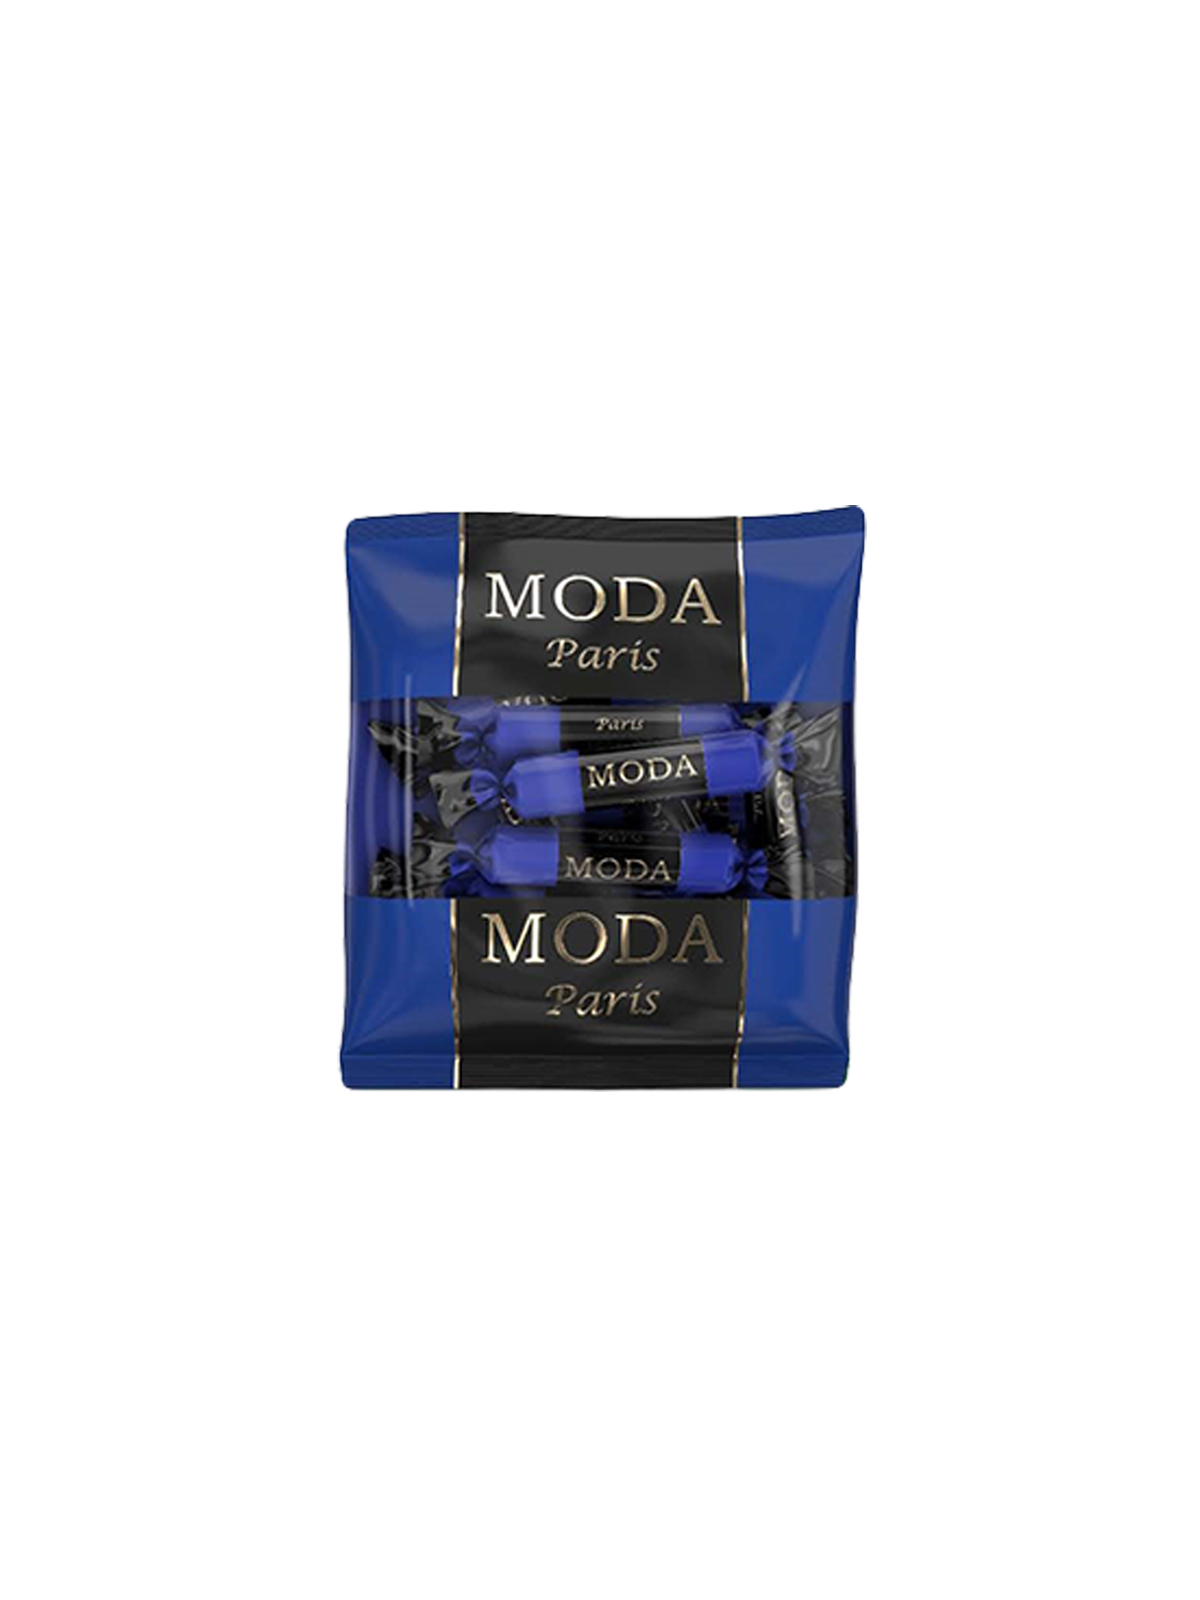 Конфеты "MODA" в ассортименте 105 г